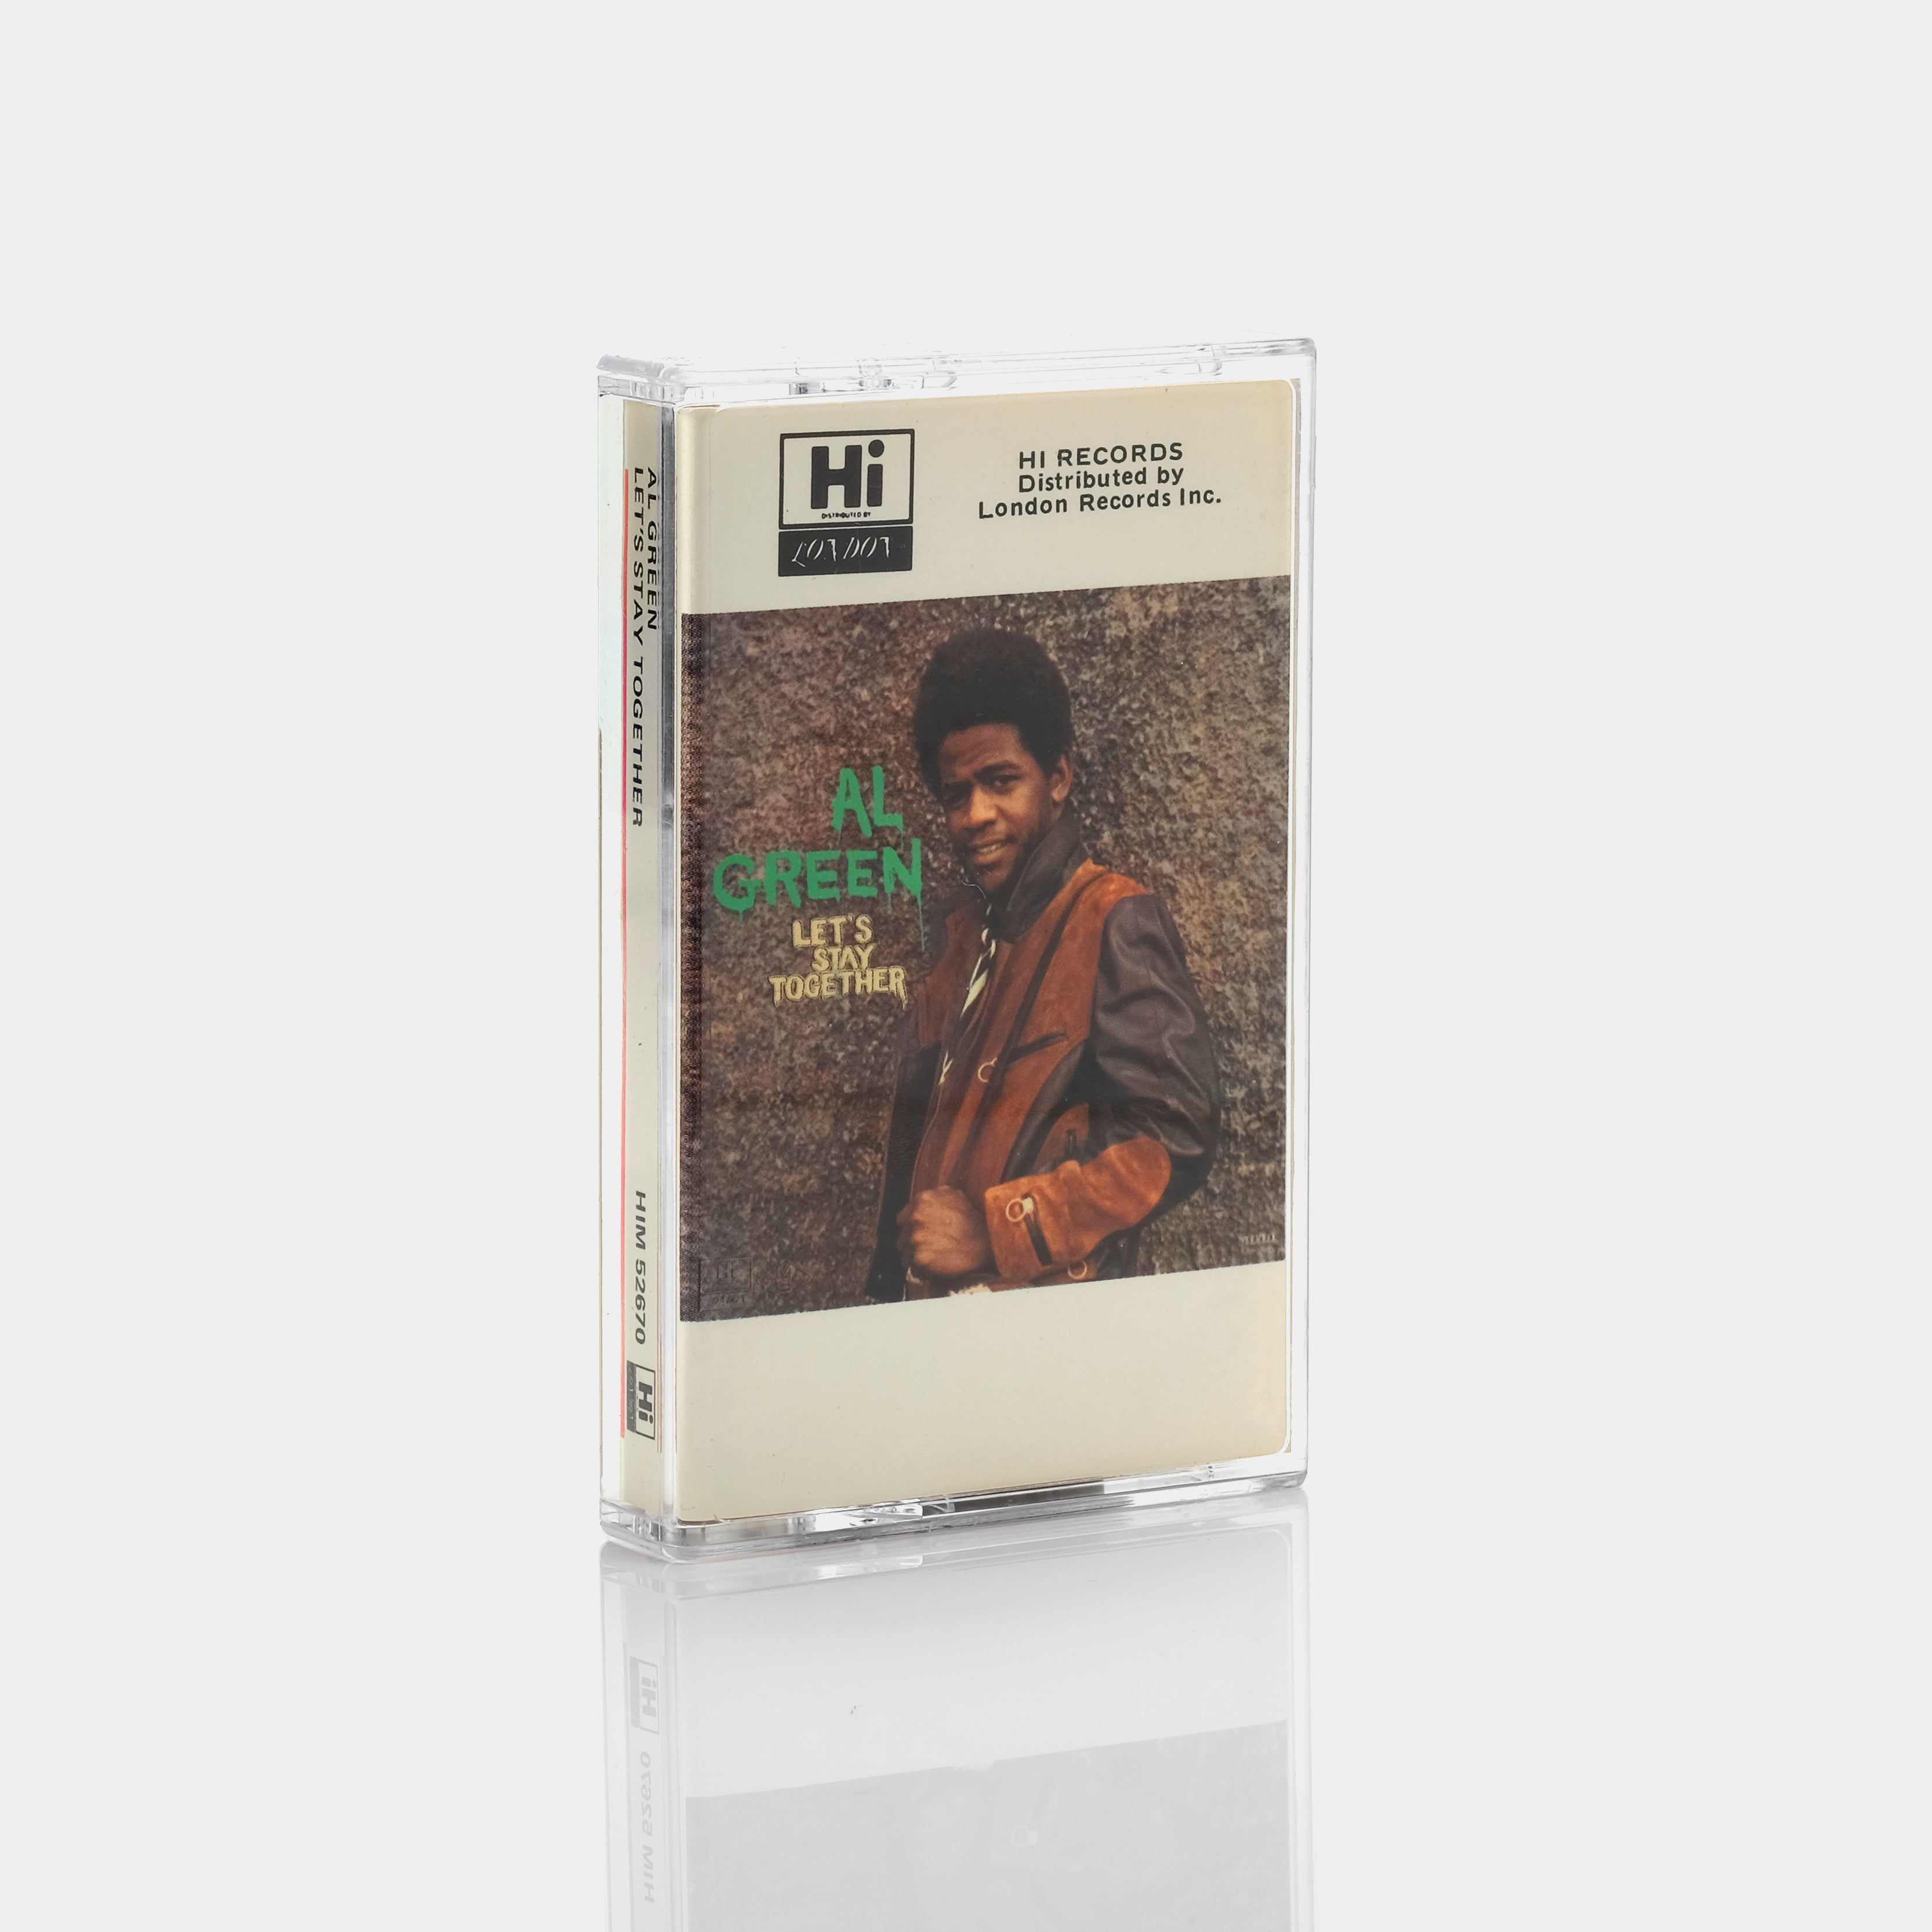 Al Green - Let's Stay Together Cassette Tape